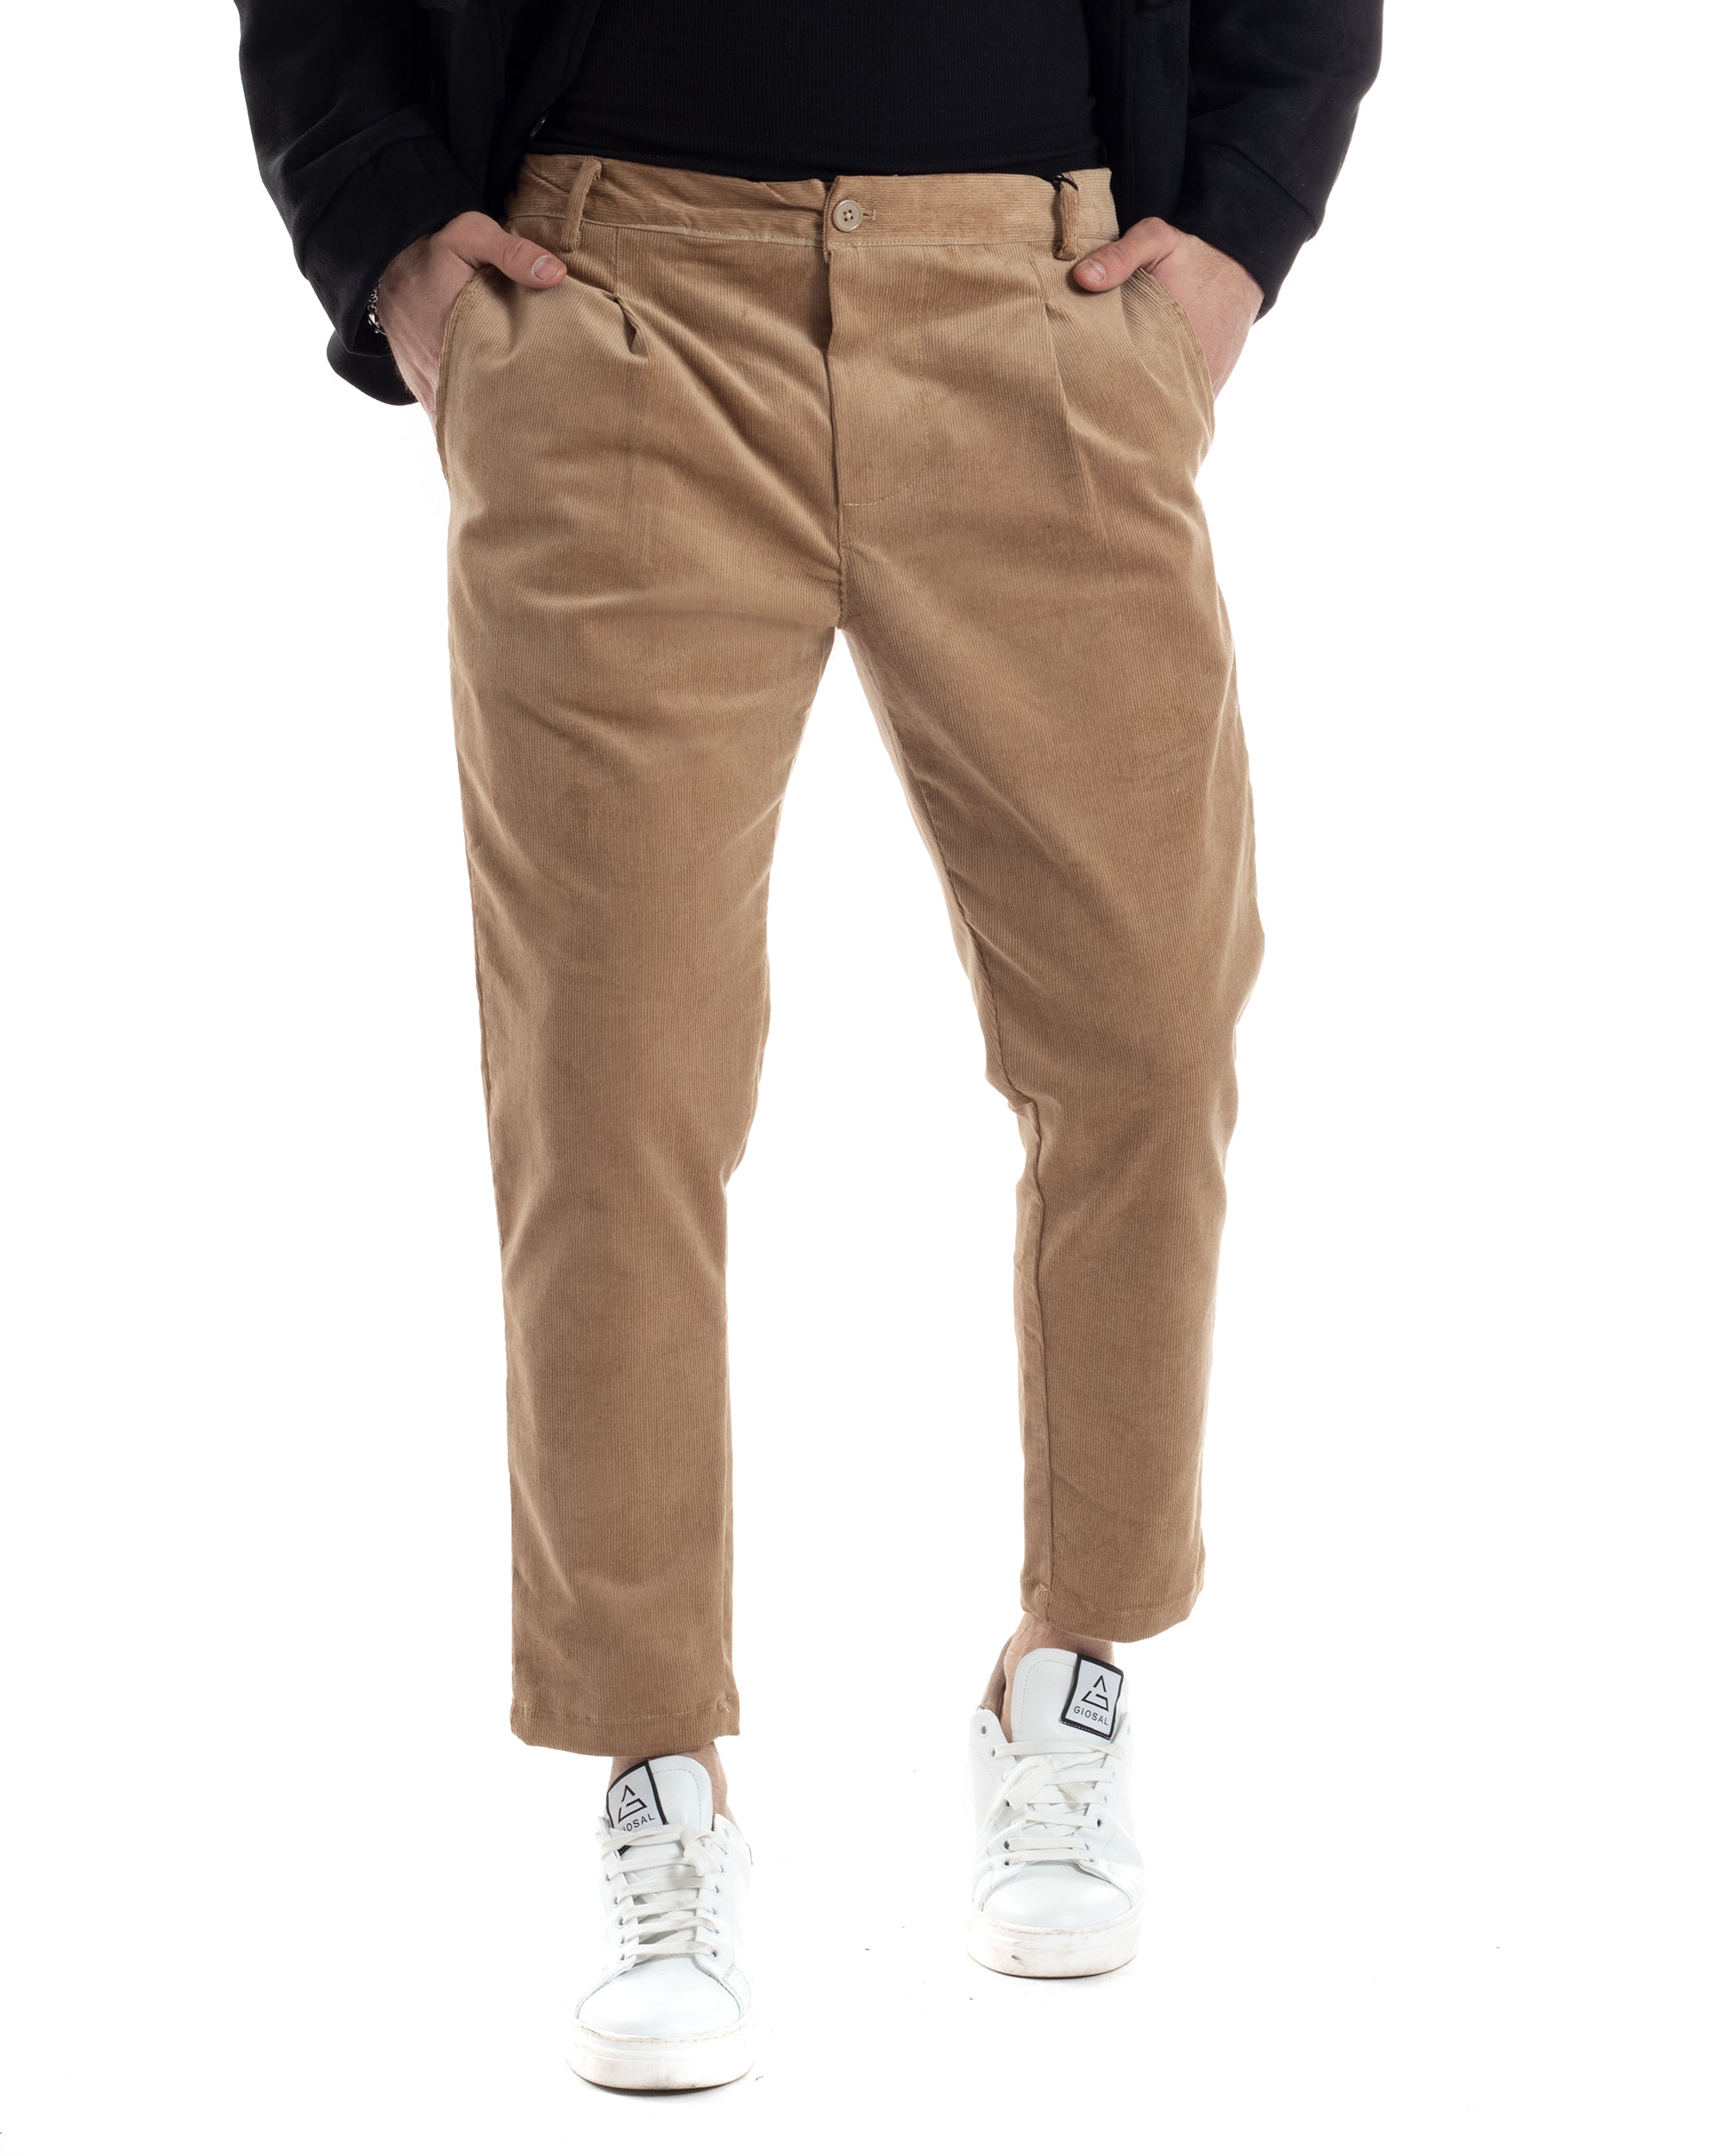 Pantaloni Uomo Tasca America Con Pinces Classico Velluto Costine Beige Casual GIOSAL-P6031A